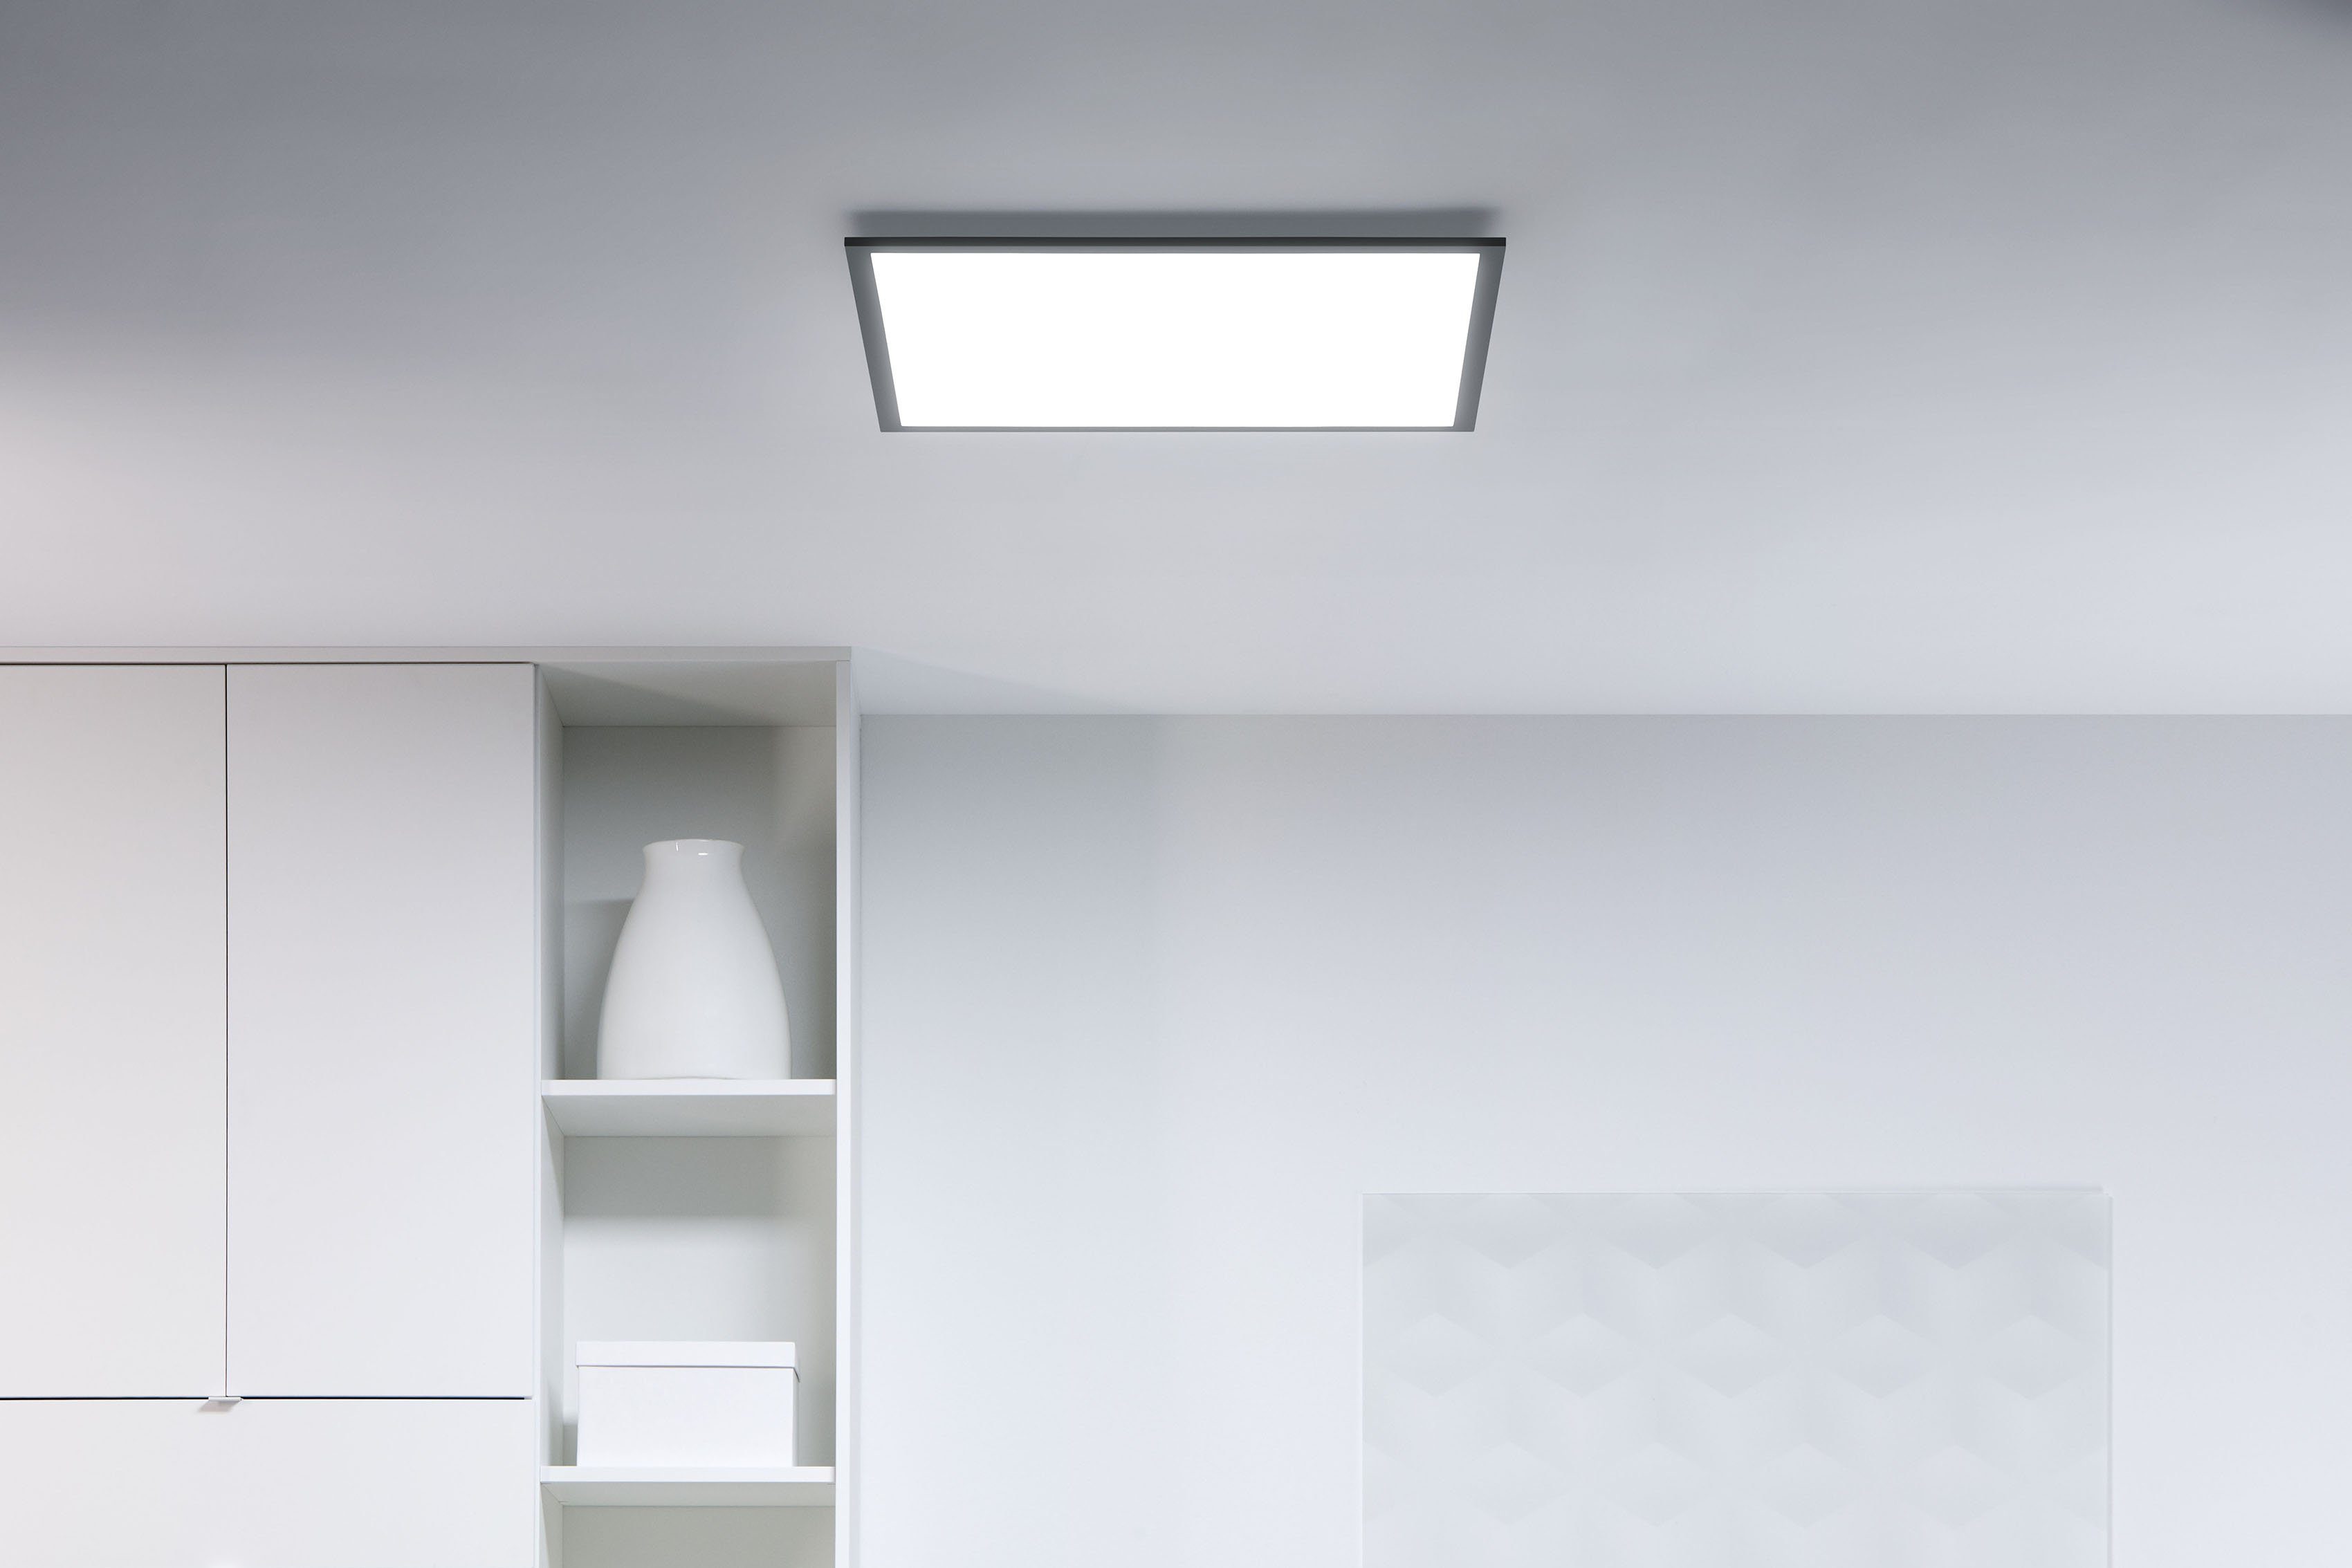 WiZ LED Deckenleuchte Tunable White, Quadratisch Dimmer, integriert, - kaltweiß, warmweiß fest LED